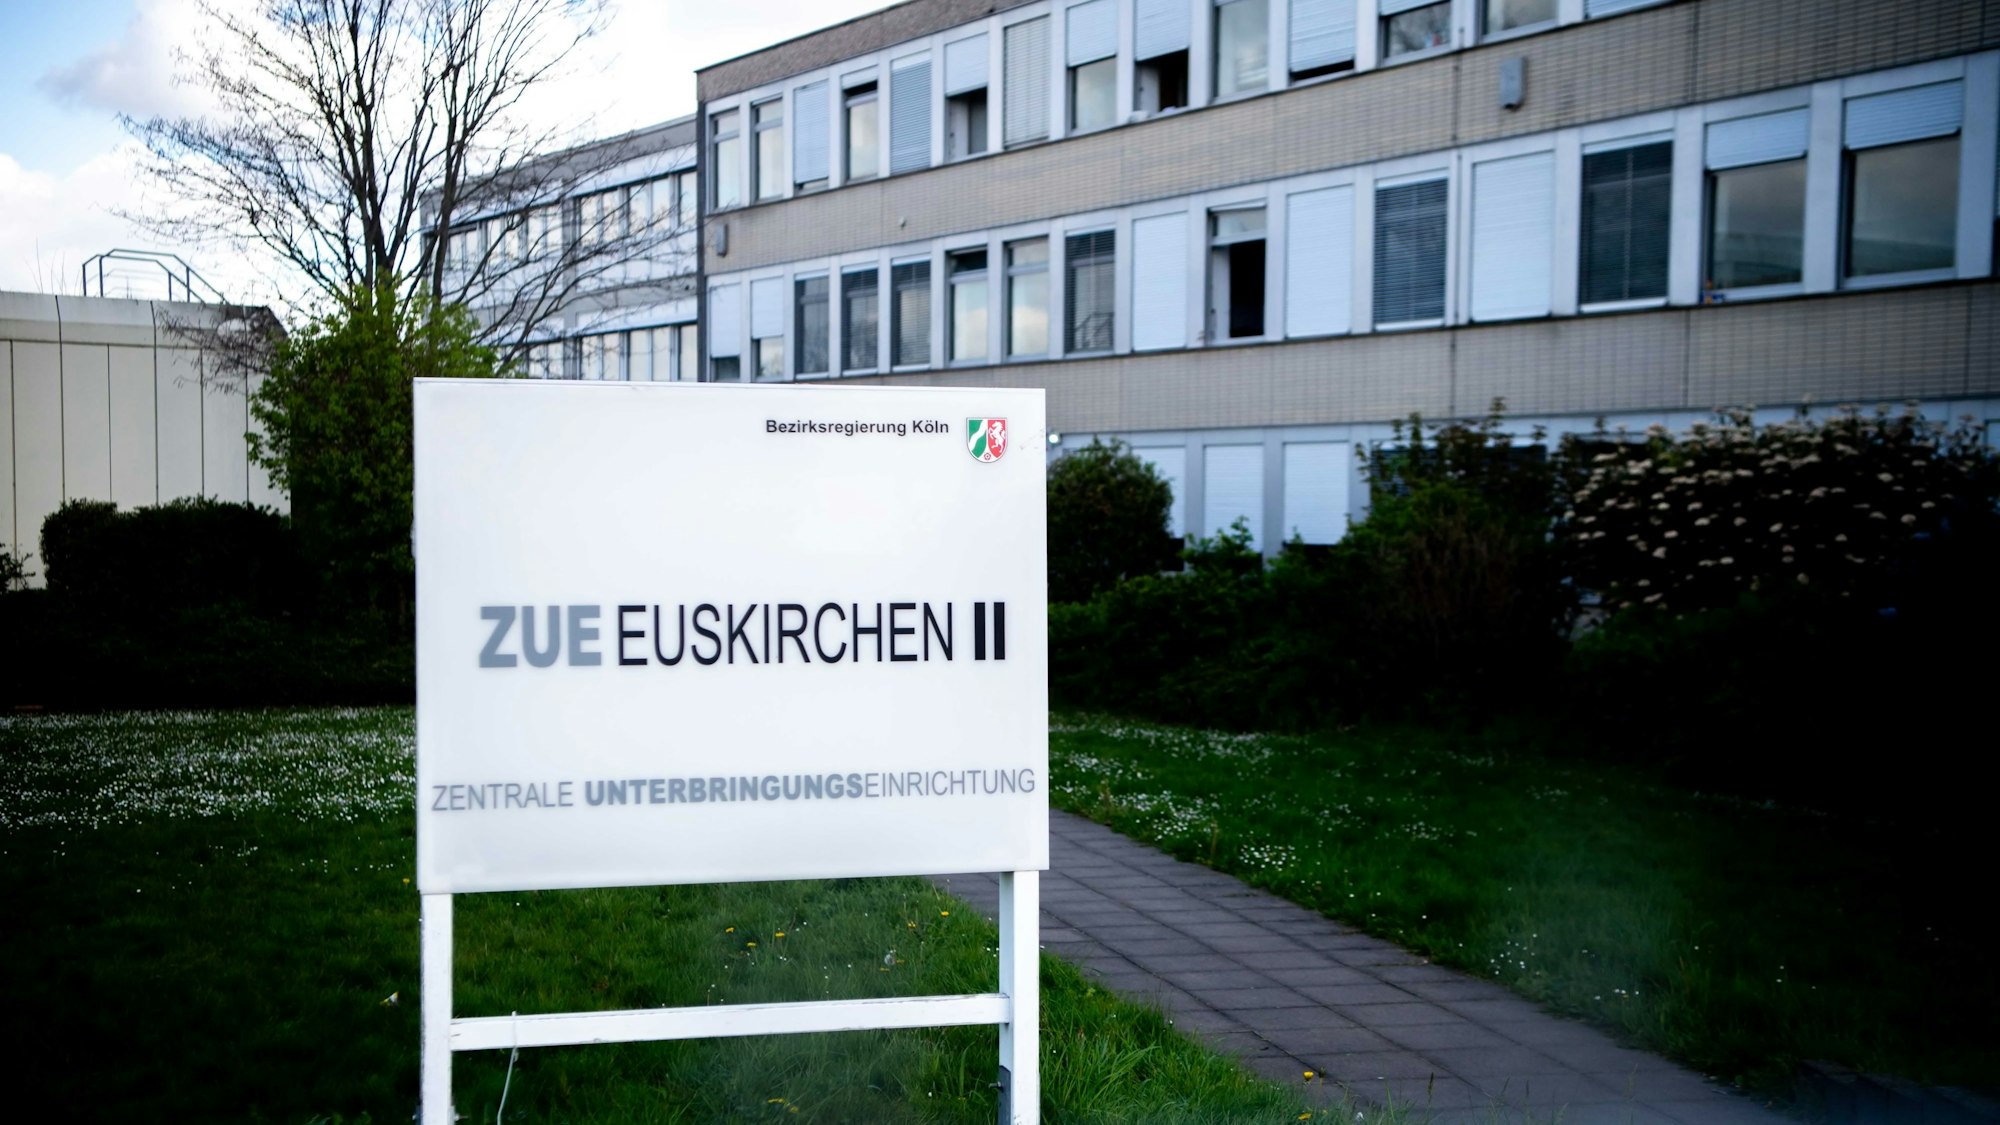 Das Bild zeigt ein Hinweisschild für die ZUE in Euskirchen. Im Hintergrund ist ein Teil des Gebäudes zu erkennen.